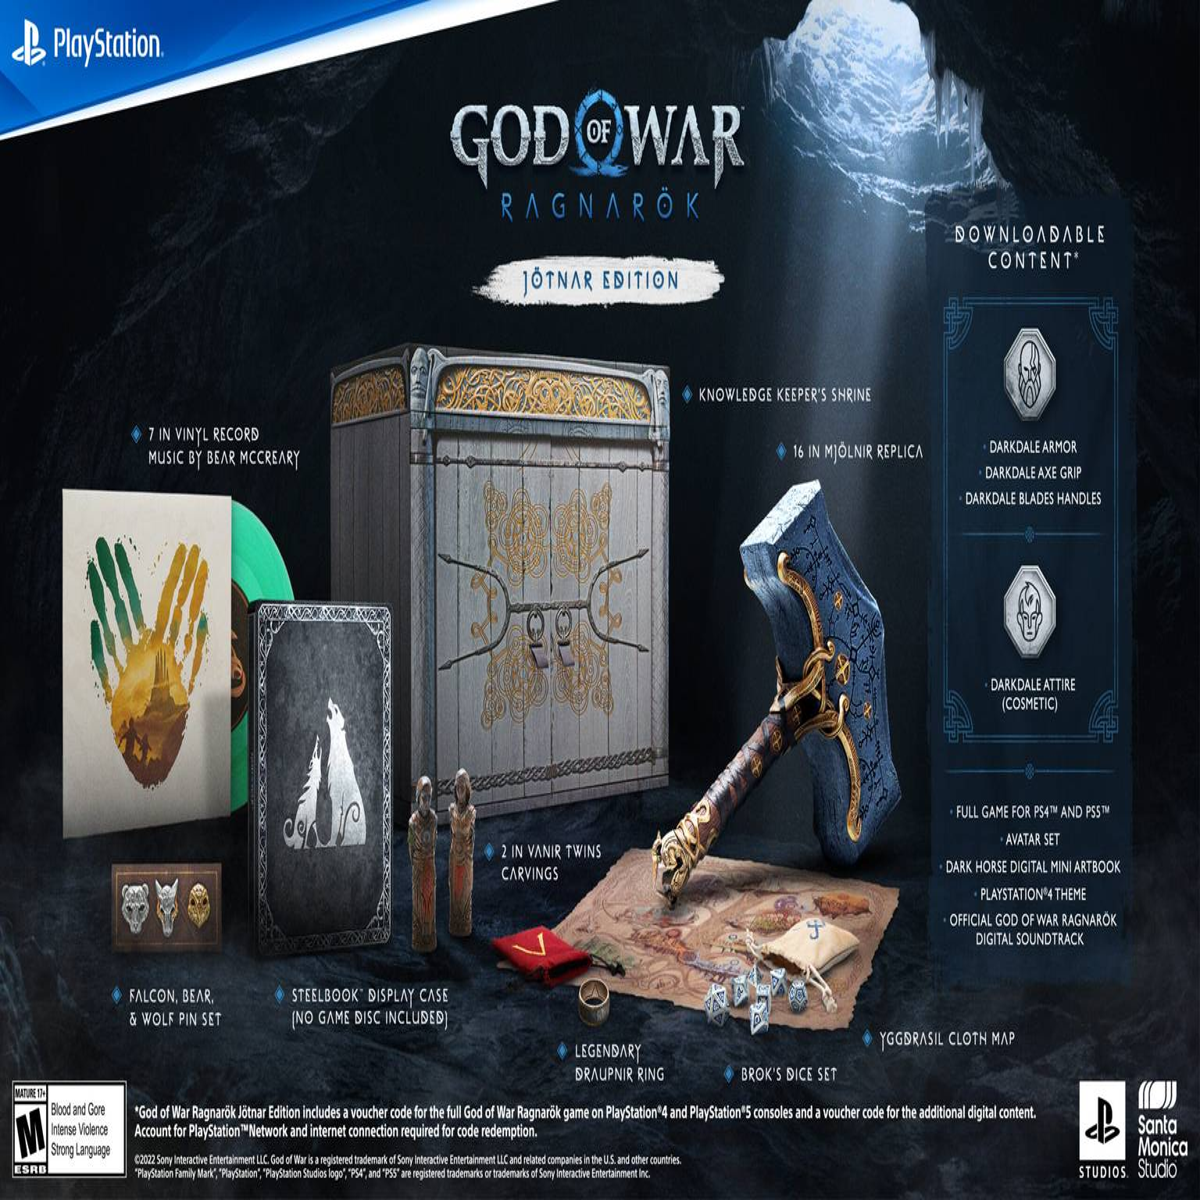 Edição Jotnar de God of War Ragnarok revendida pelo triplo do preço